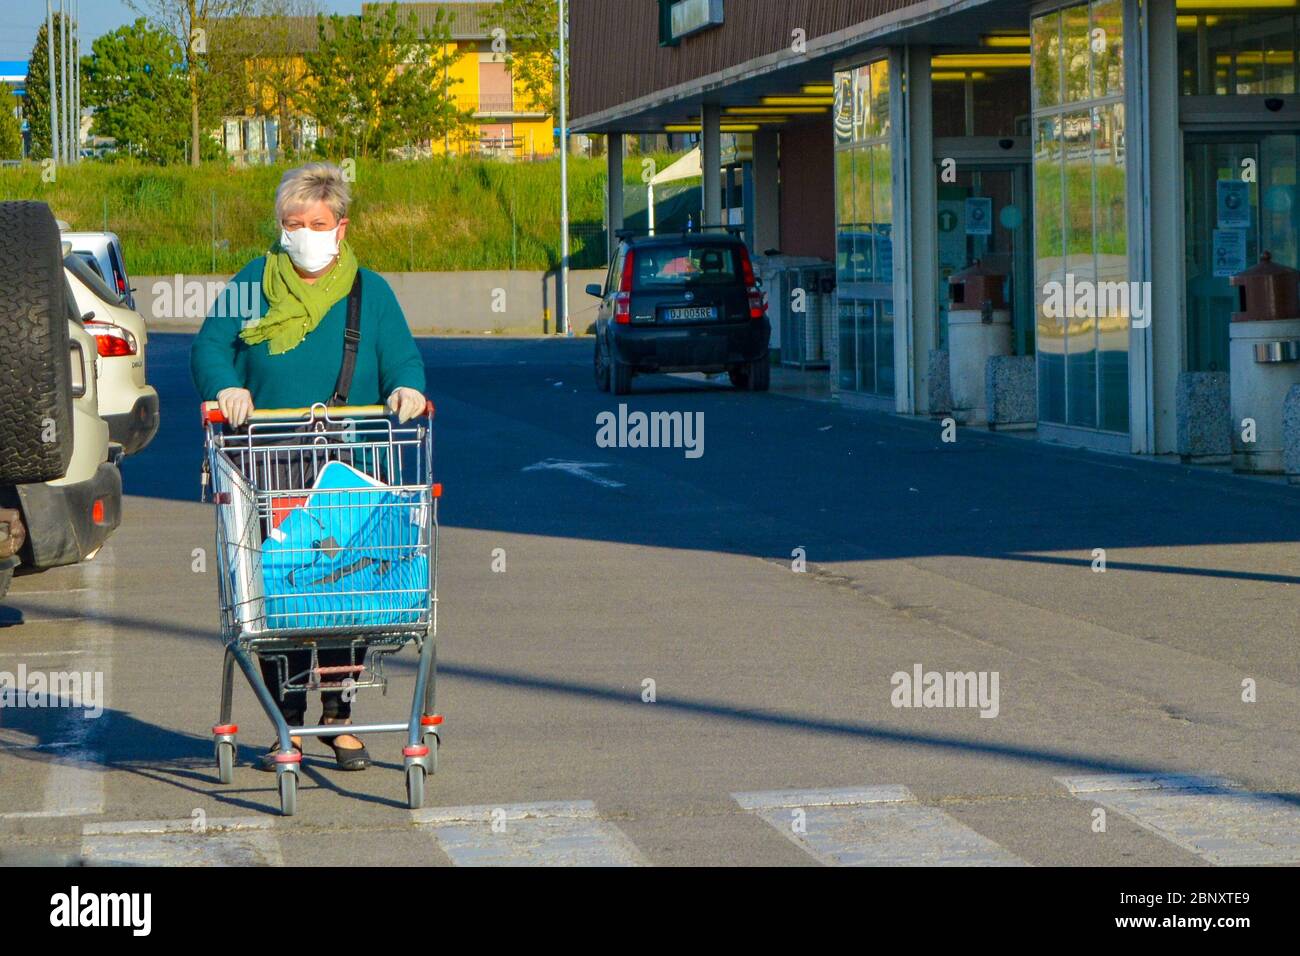 Mujer italiana de edad, pensionista con máscara facial coronavirus empujando su carrito de compras fuera de una tienda de comestibles. Lady teme por la pandemia de COVID-19. Foto de stock